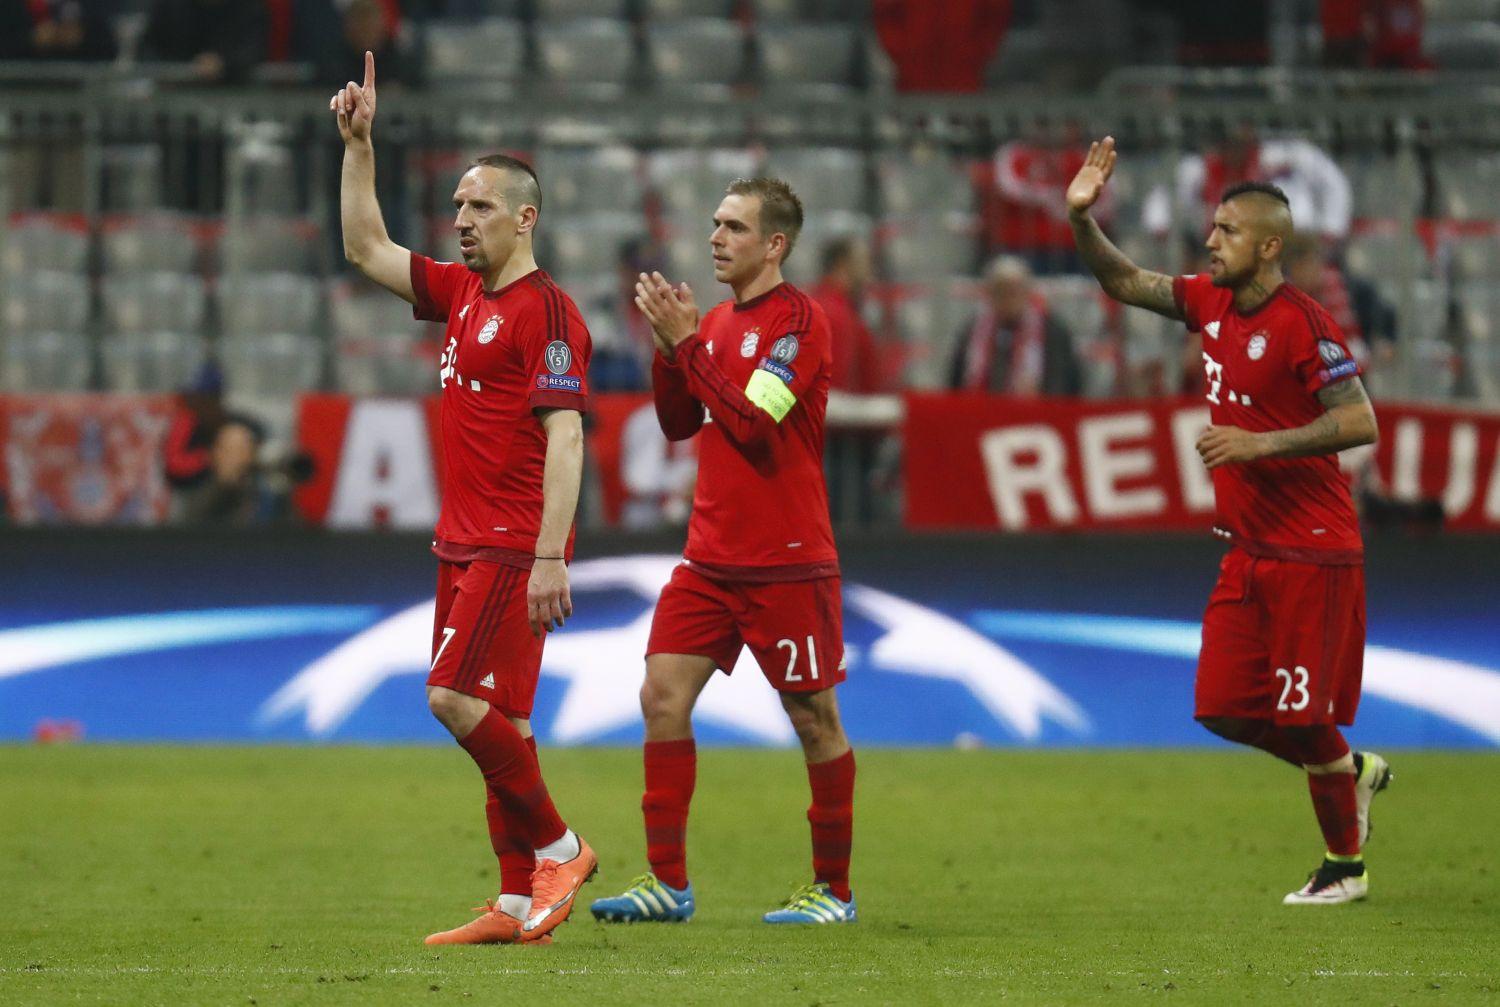 Franck Ribery, Philipp Lahm és Arturo Vidal (Bayern München) a meccs végén